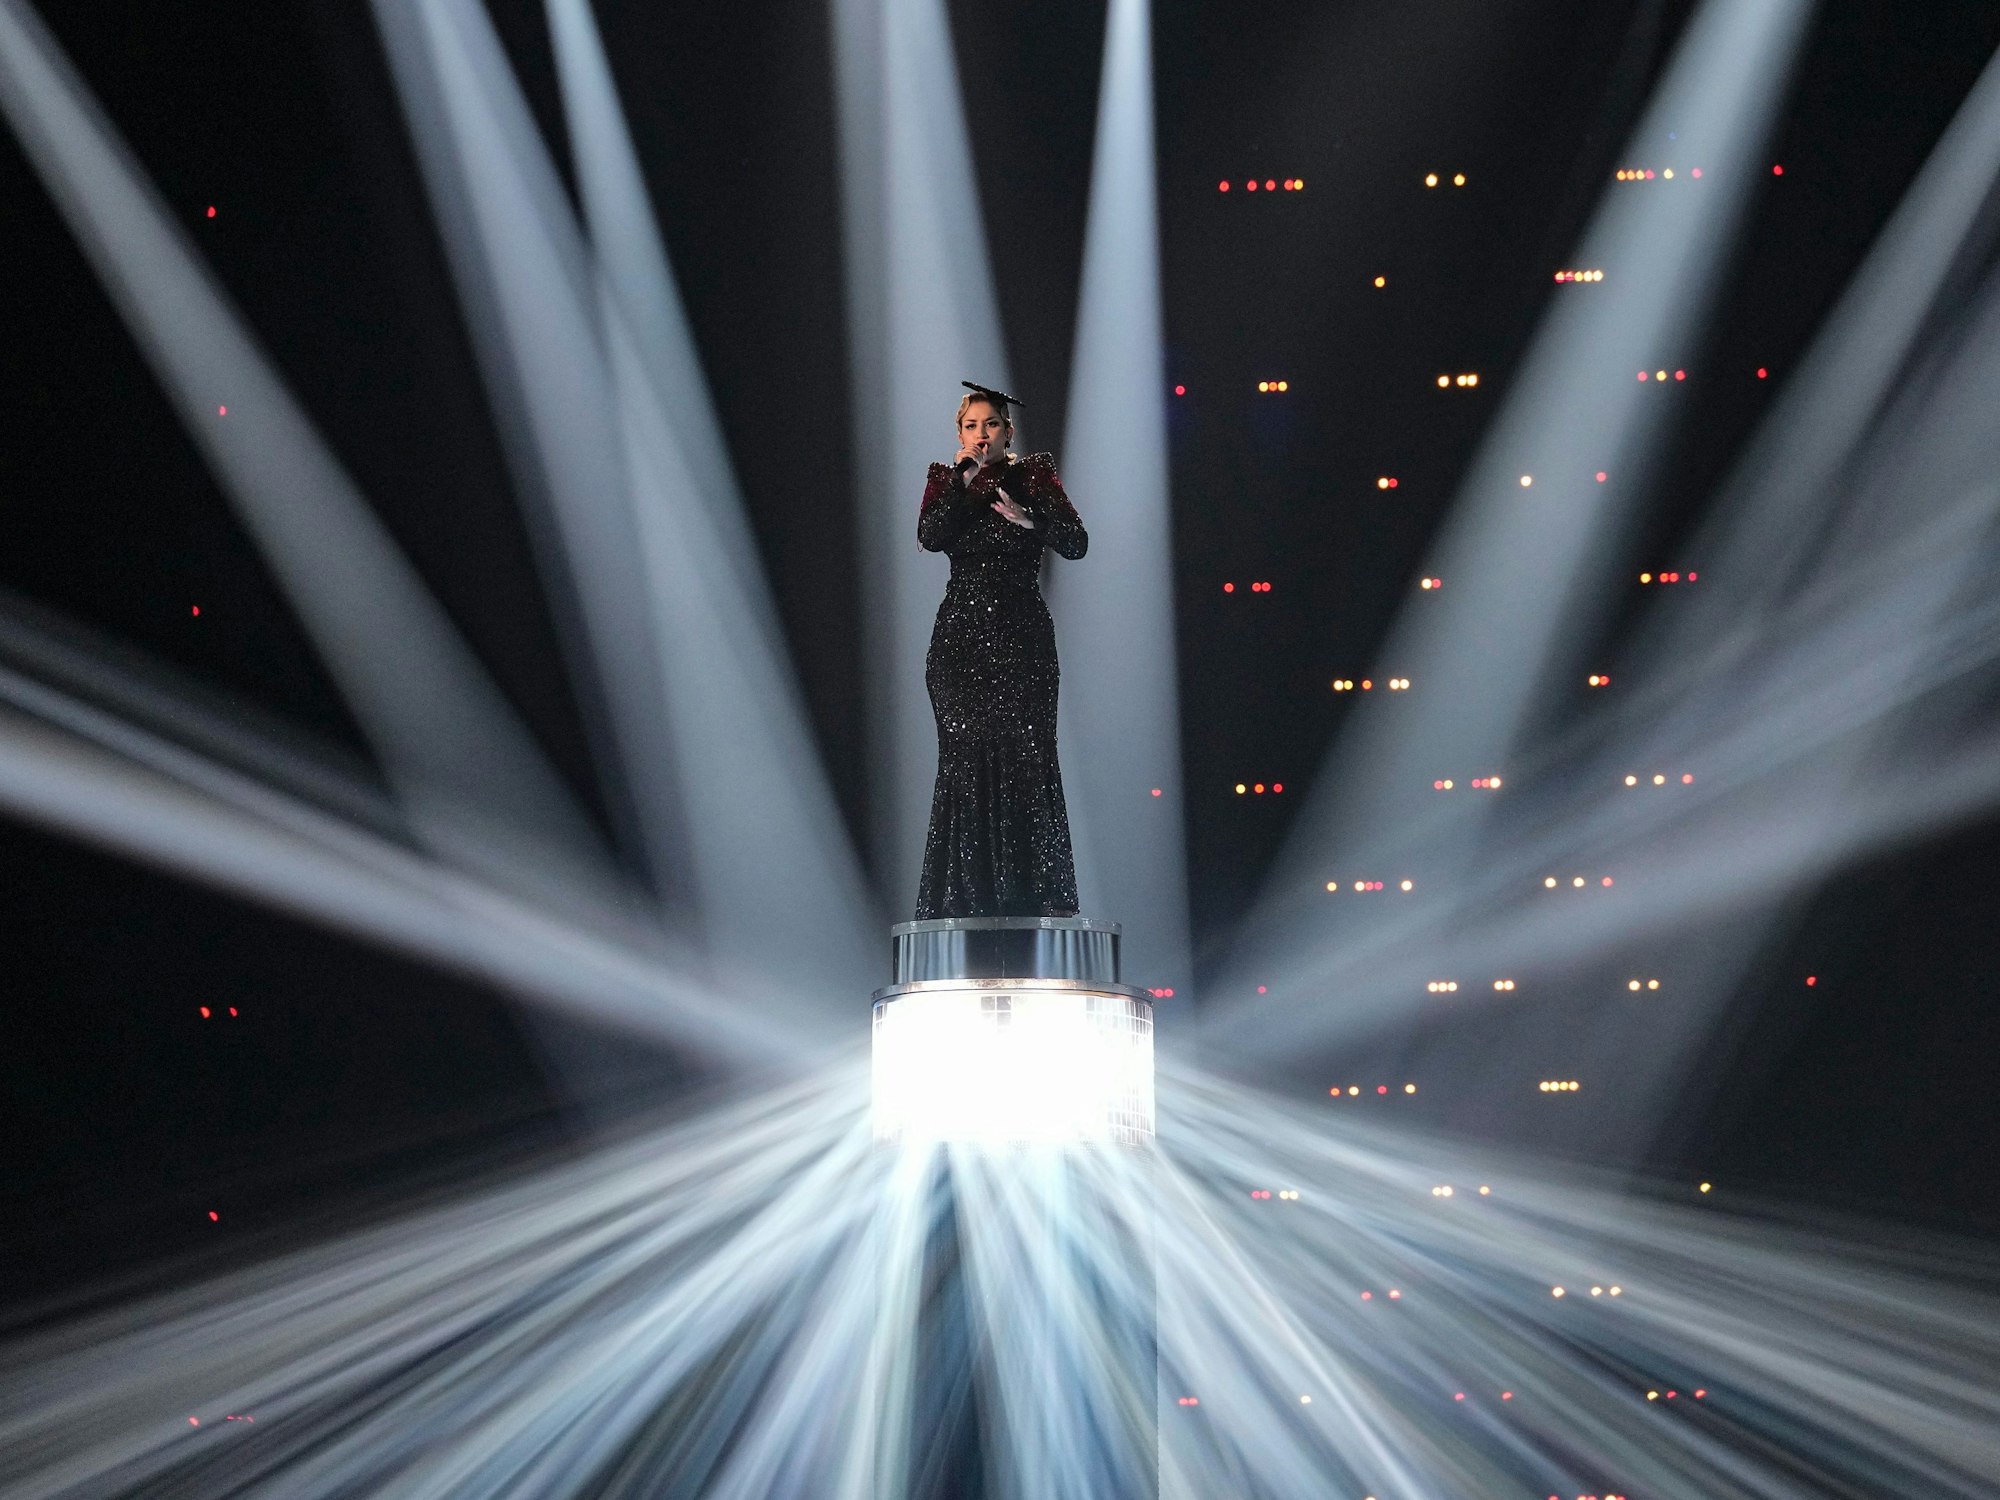 La Zarra aus Frankreich tritt während der Generalprobe für das große Finale des Eurovision Song Contest auf.